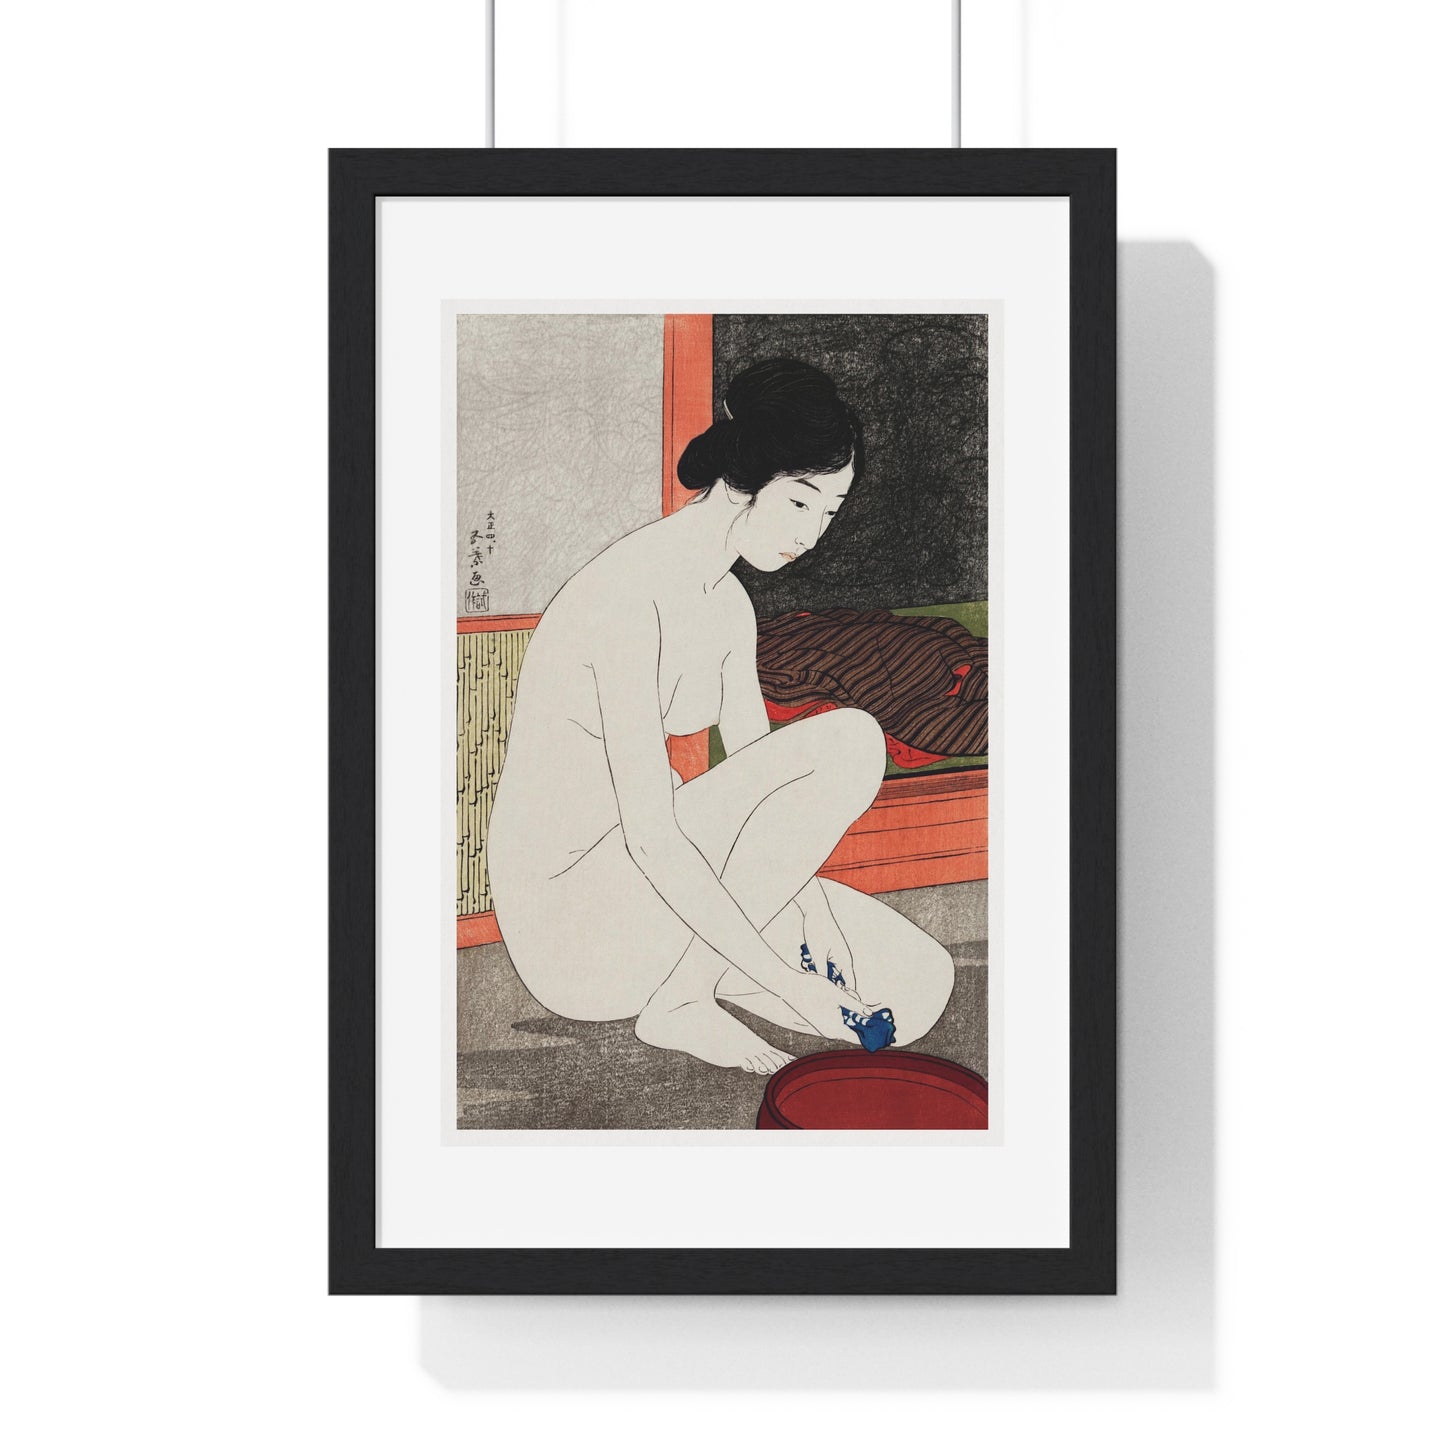 Yokugo no Onna 'Woman After a Bath' (1915) by Goyō Hashiguchi, from the Original, Framed Art Print